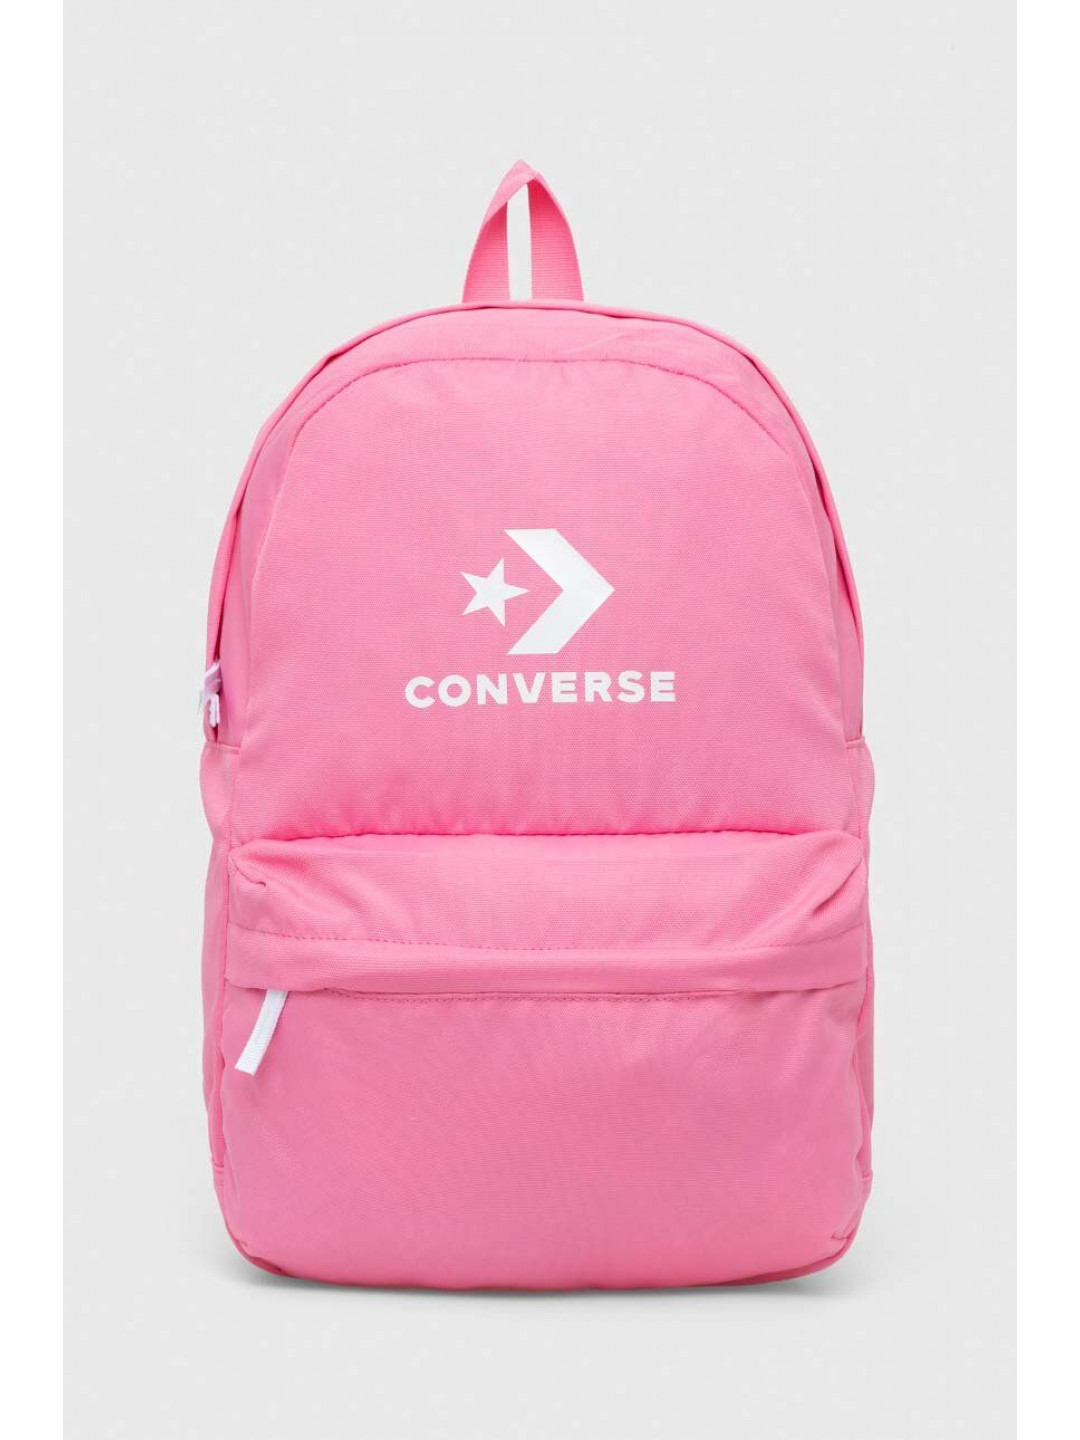 Batoh Converse růžová barva velký s potiskem